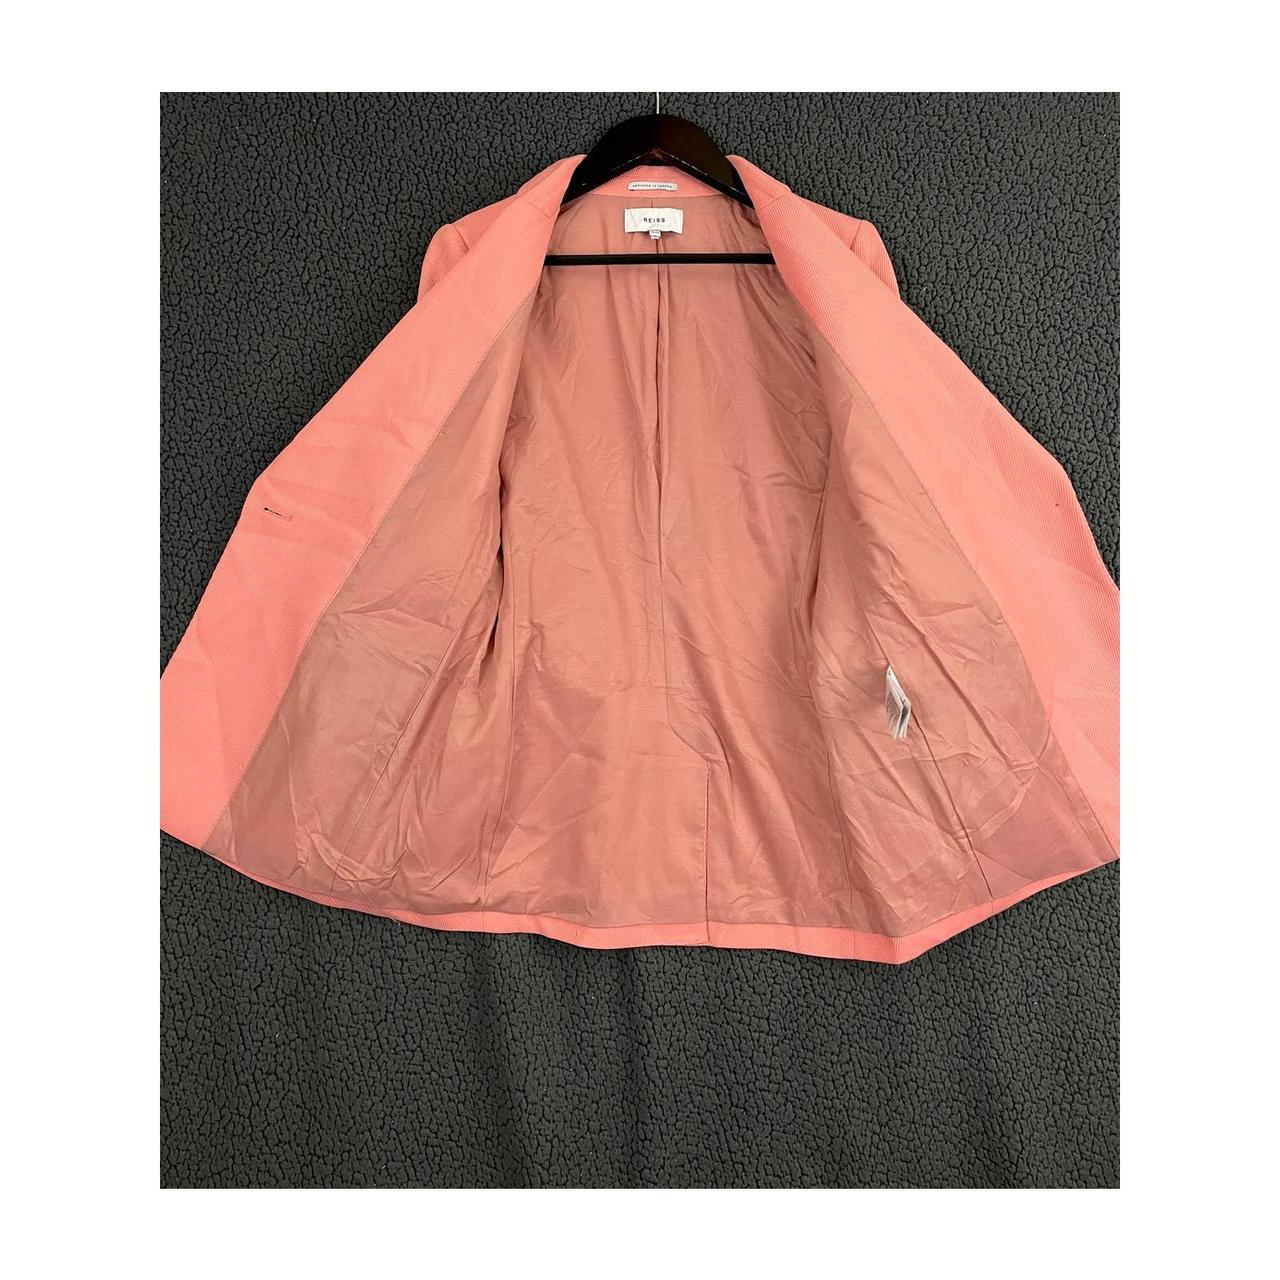 Reiss Women's Pink Jacket (4)